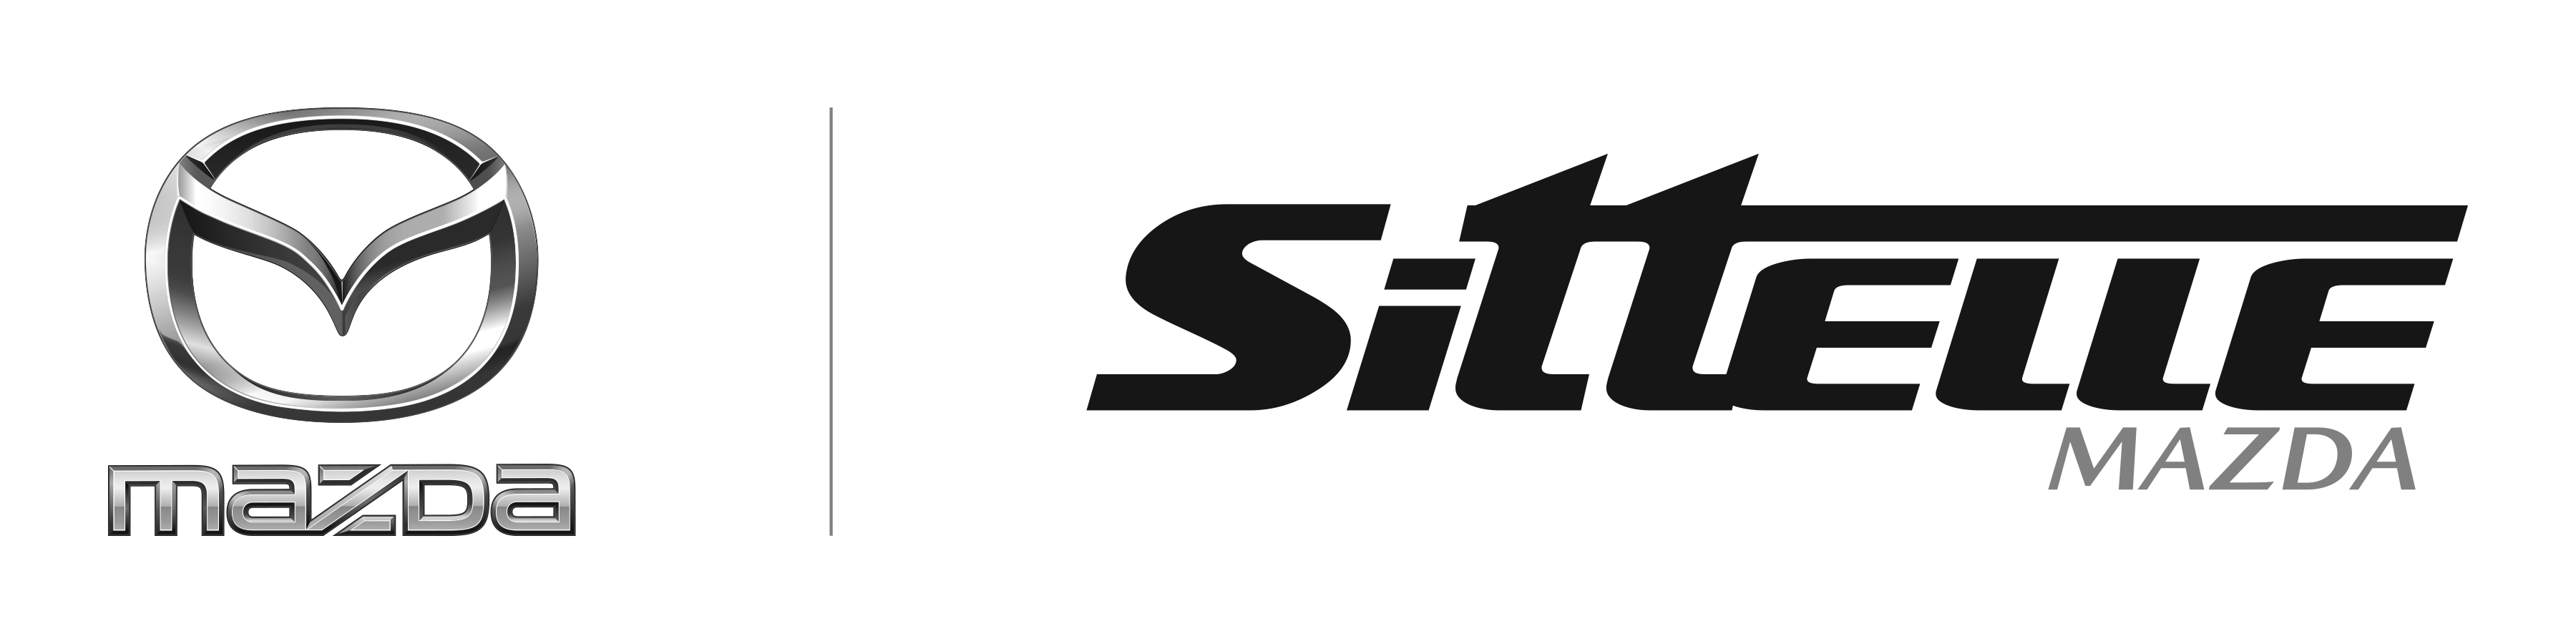 SittelleMazda_Logo2019_NB